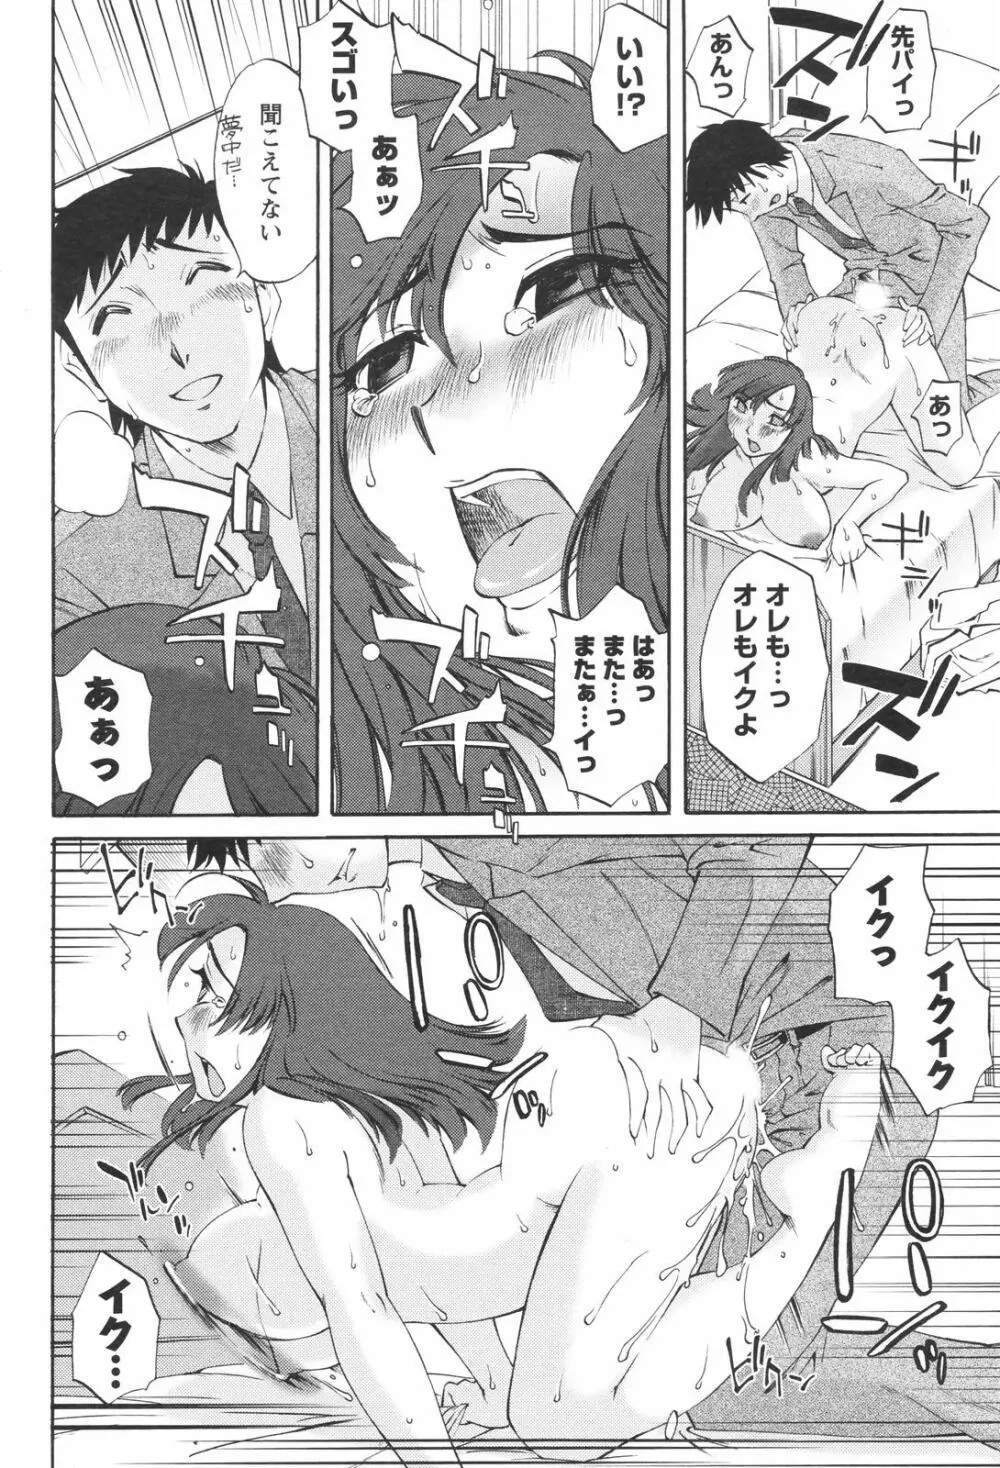 メンズヤングスペシャルIKAZUCHI雷 Vol.4 2007年12月号増刊 178ページ